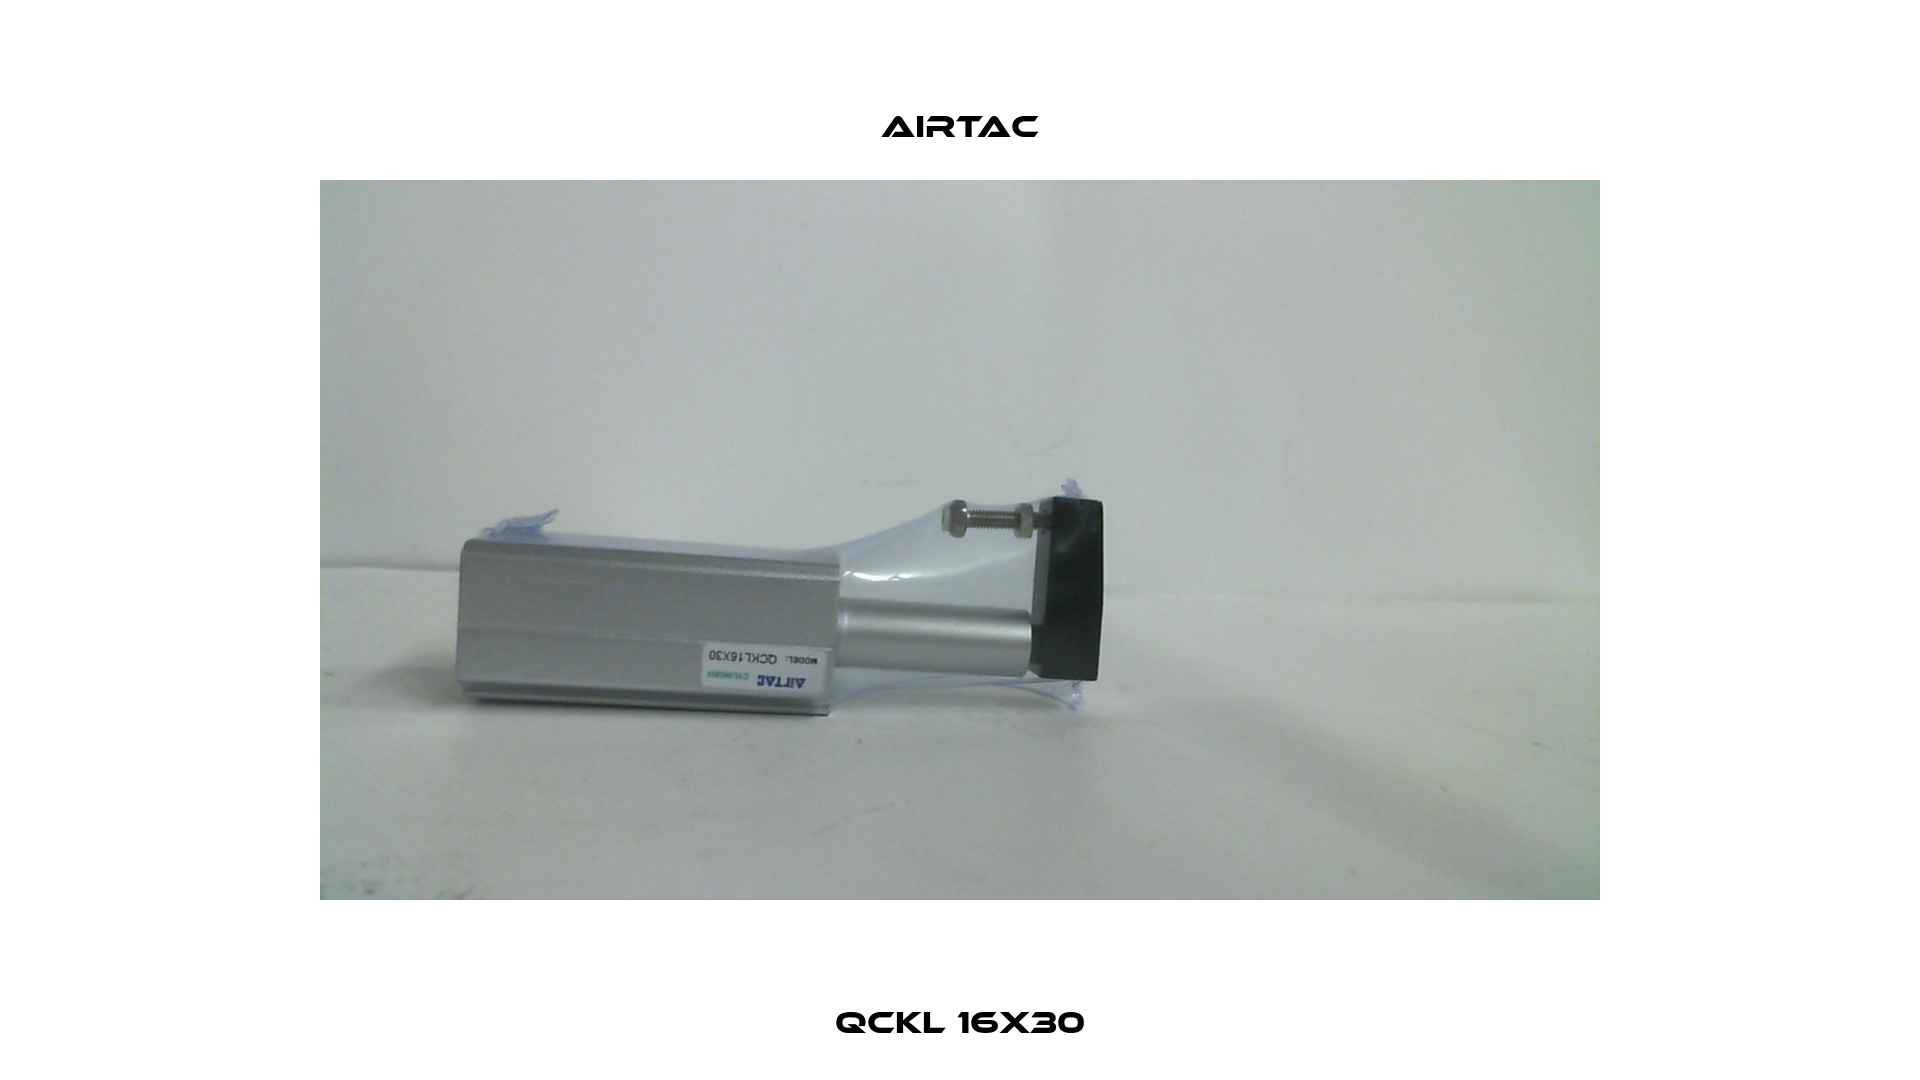 QCKL 16X30 Airtac